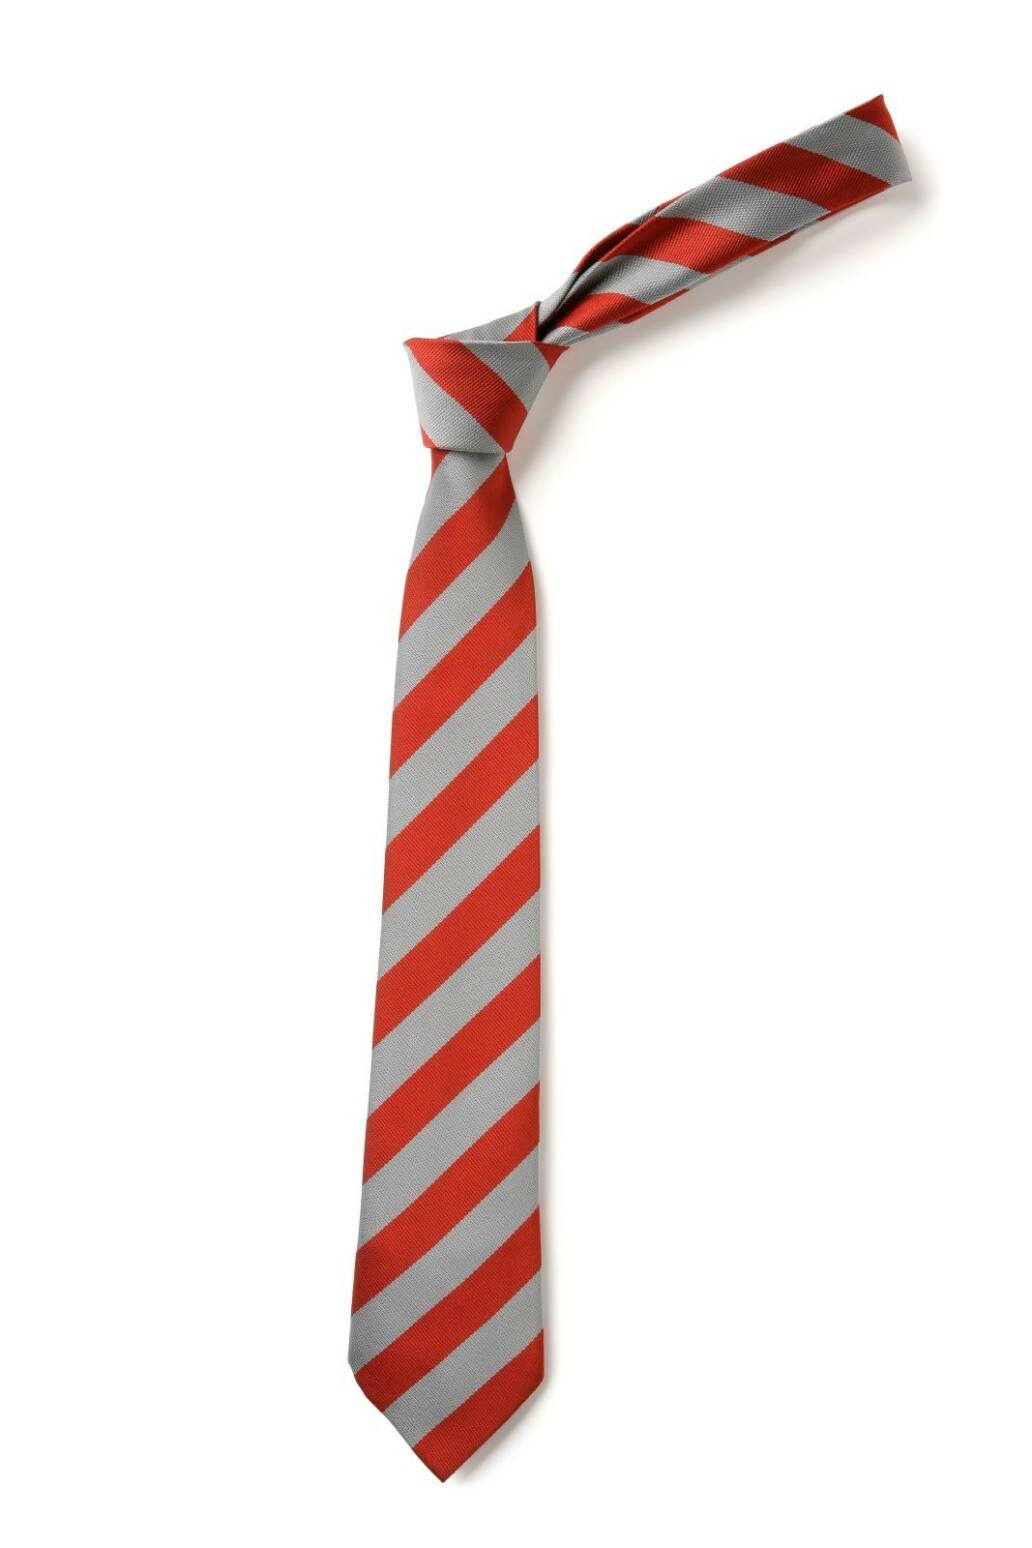 St John's RC Primary School Tie